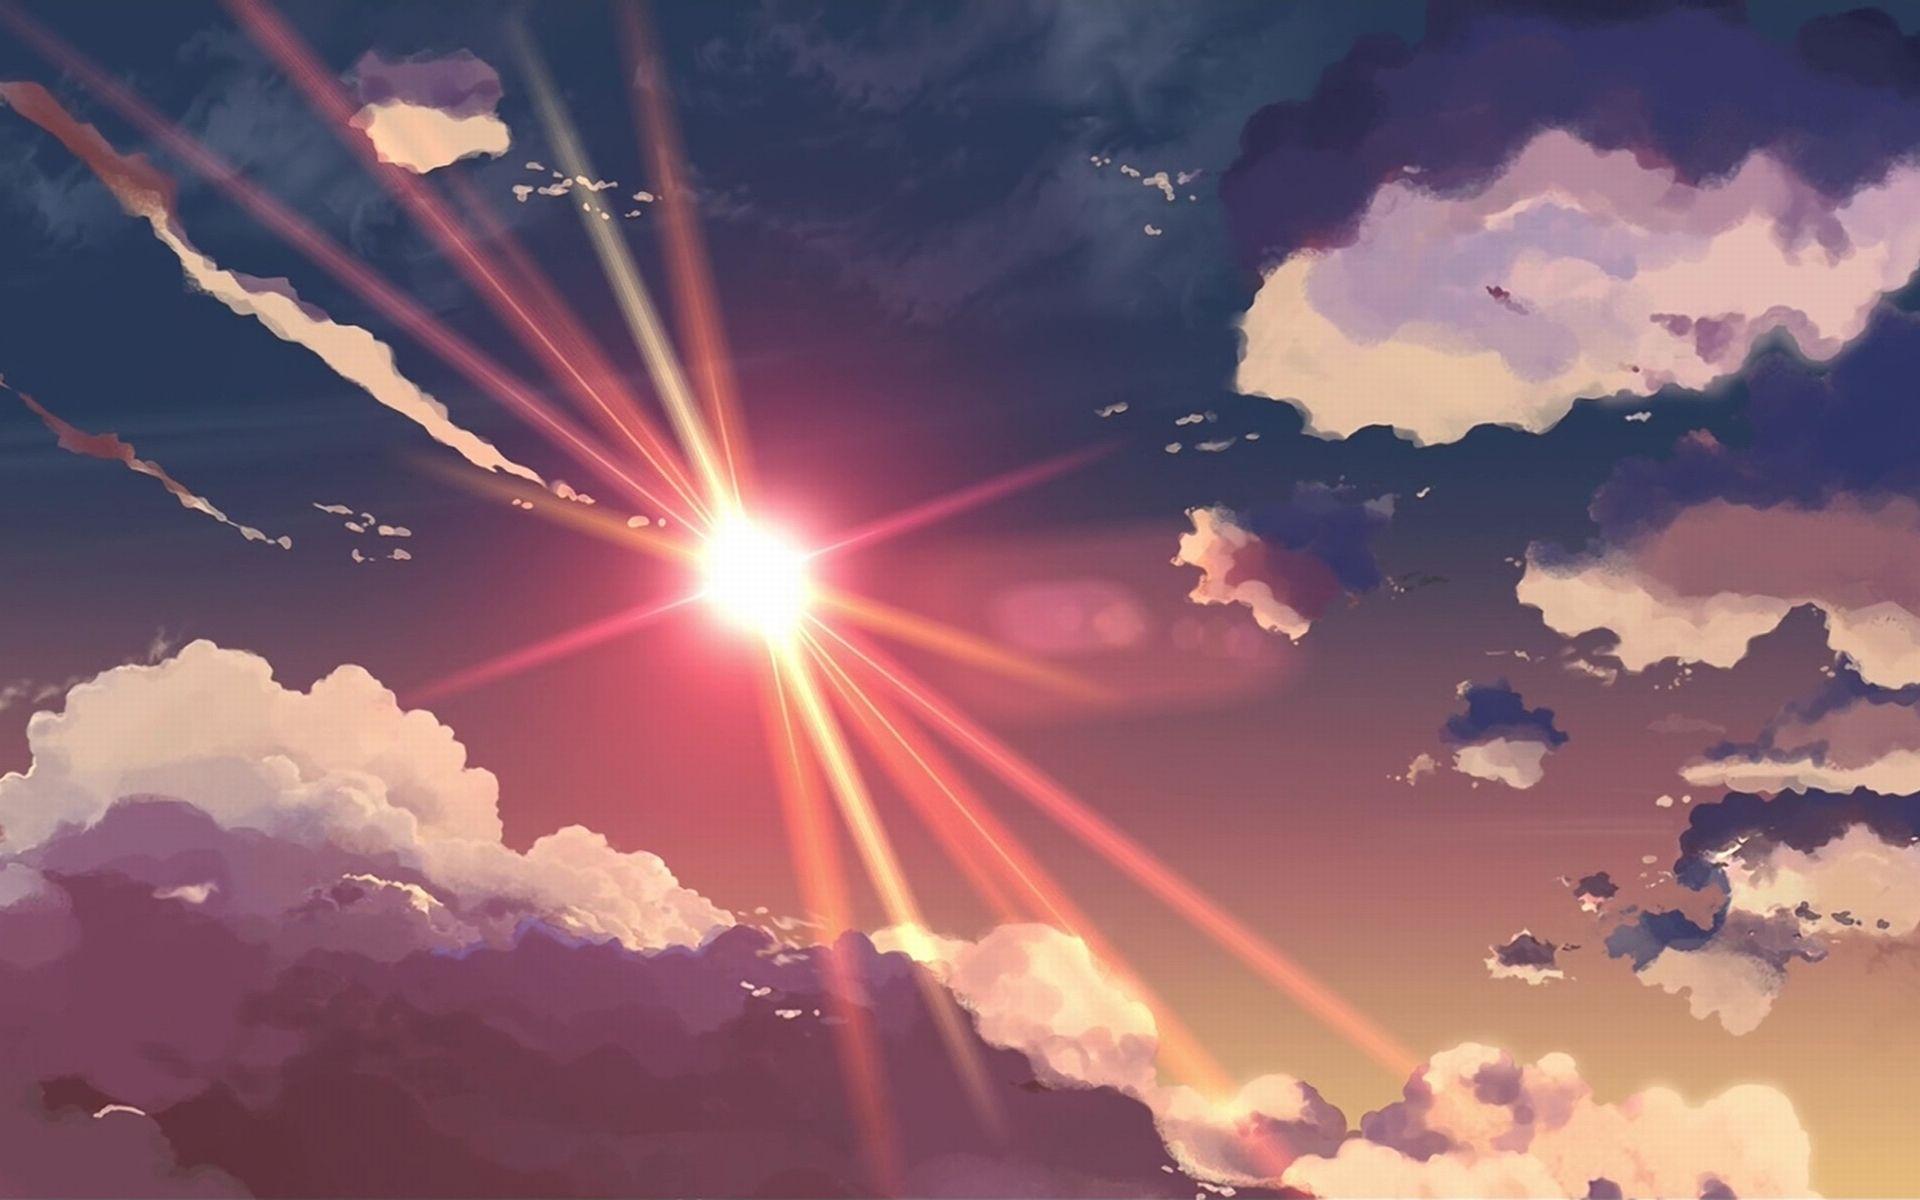 Anime Sunshine wallpaper. Anime scenery wallpaper, Anime